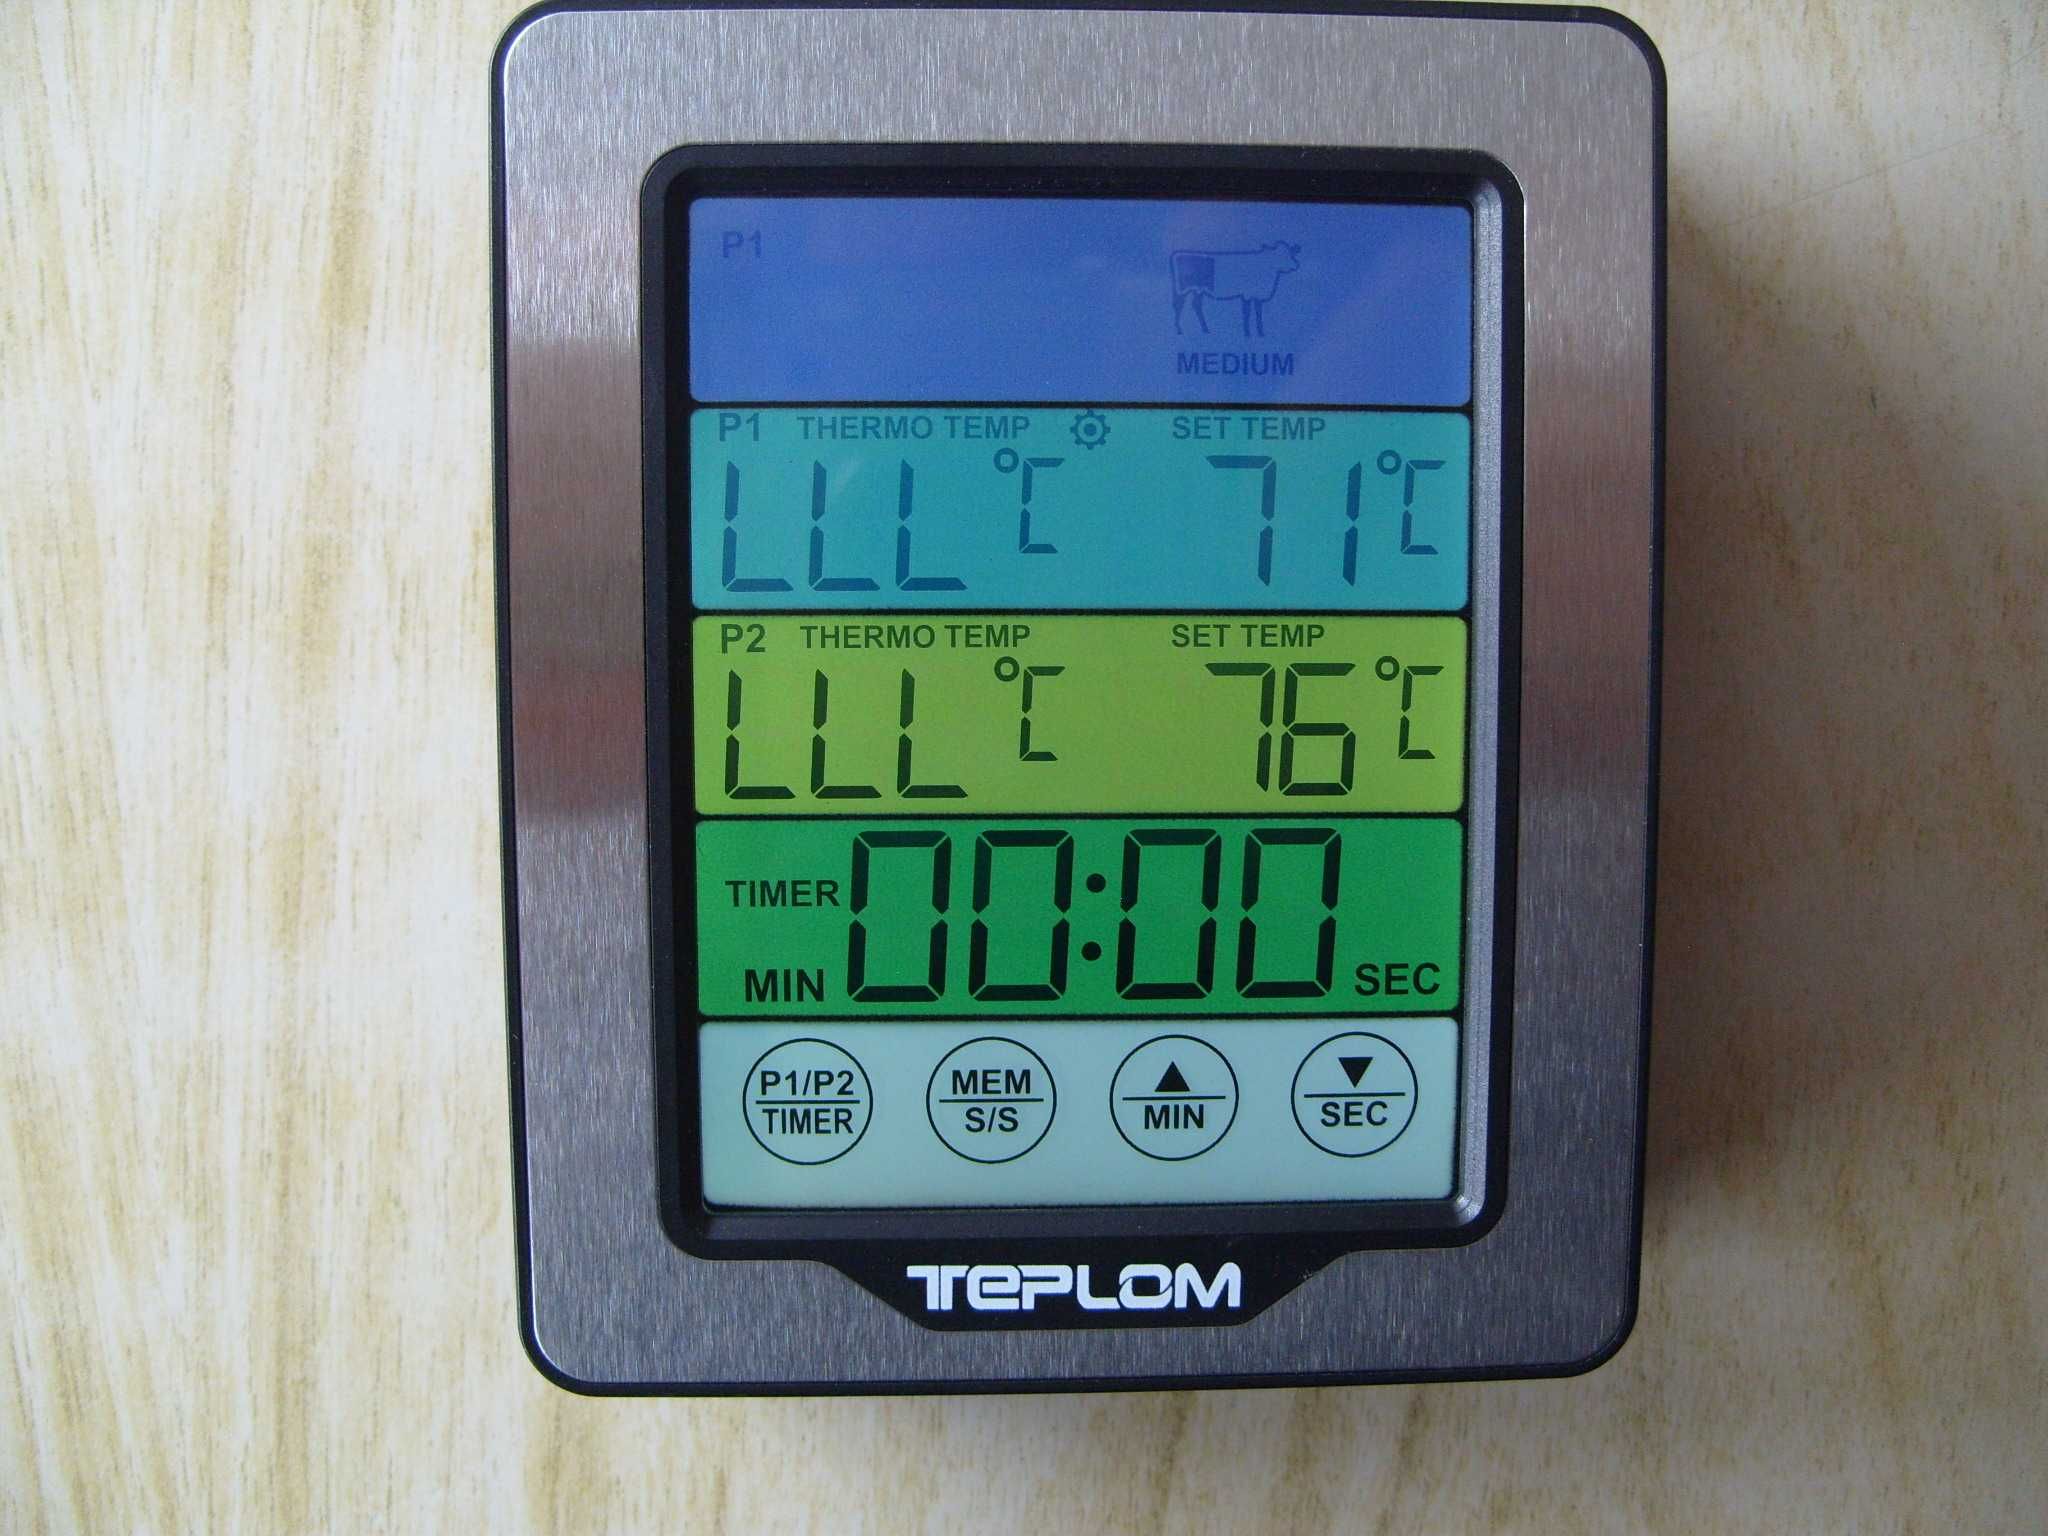 Готварски термометър TM-2379, с таймер и 2 сонди. Българско упътване